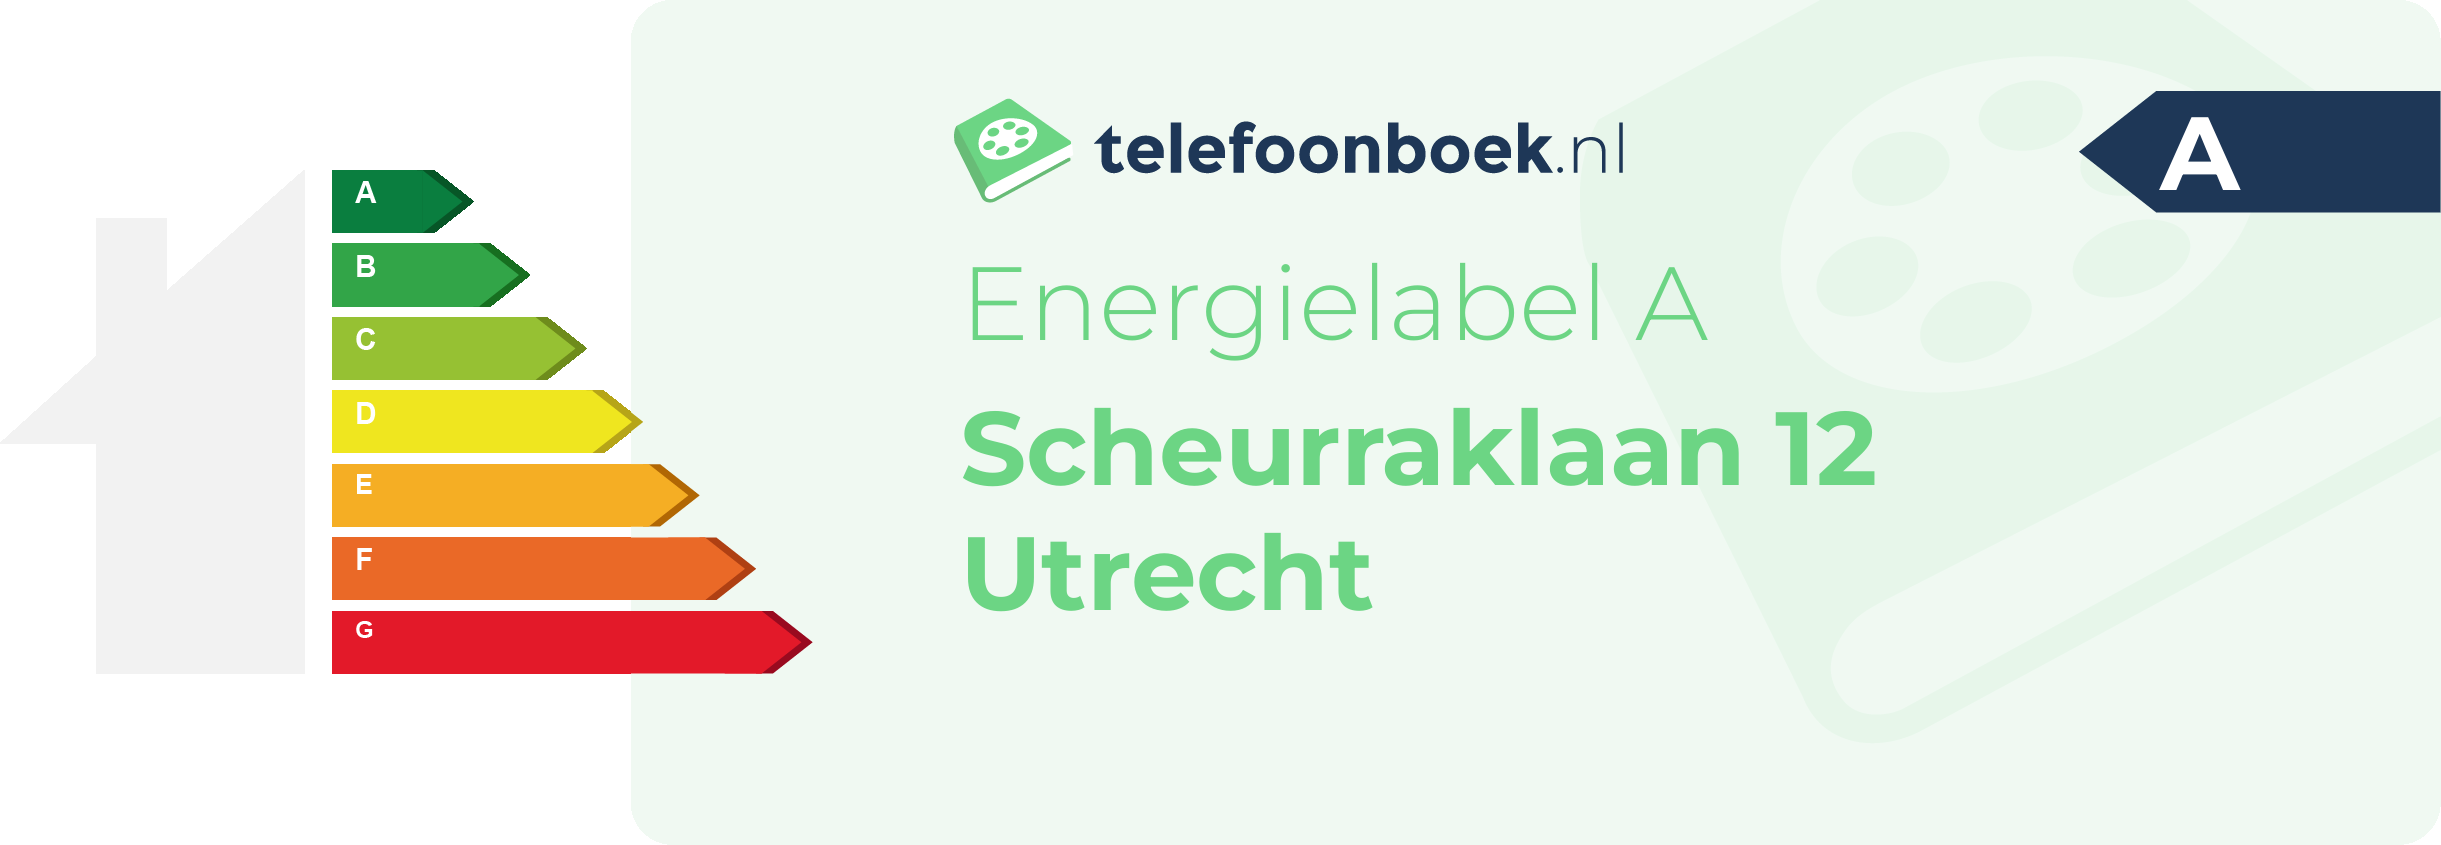 Energielabel Scheurraklaan 12 Utrecht